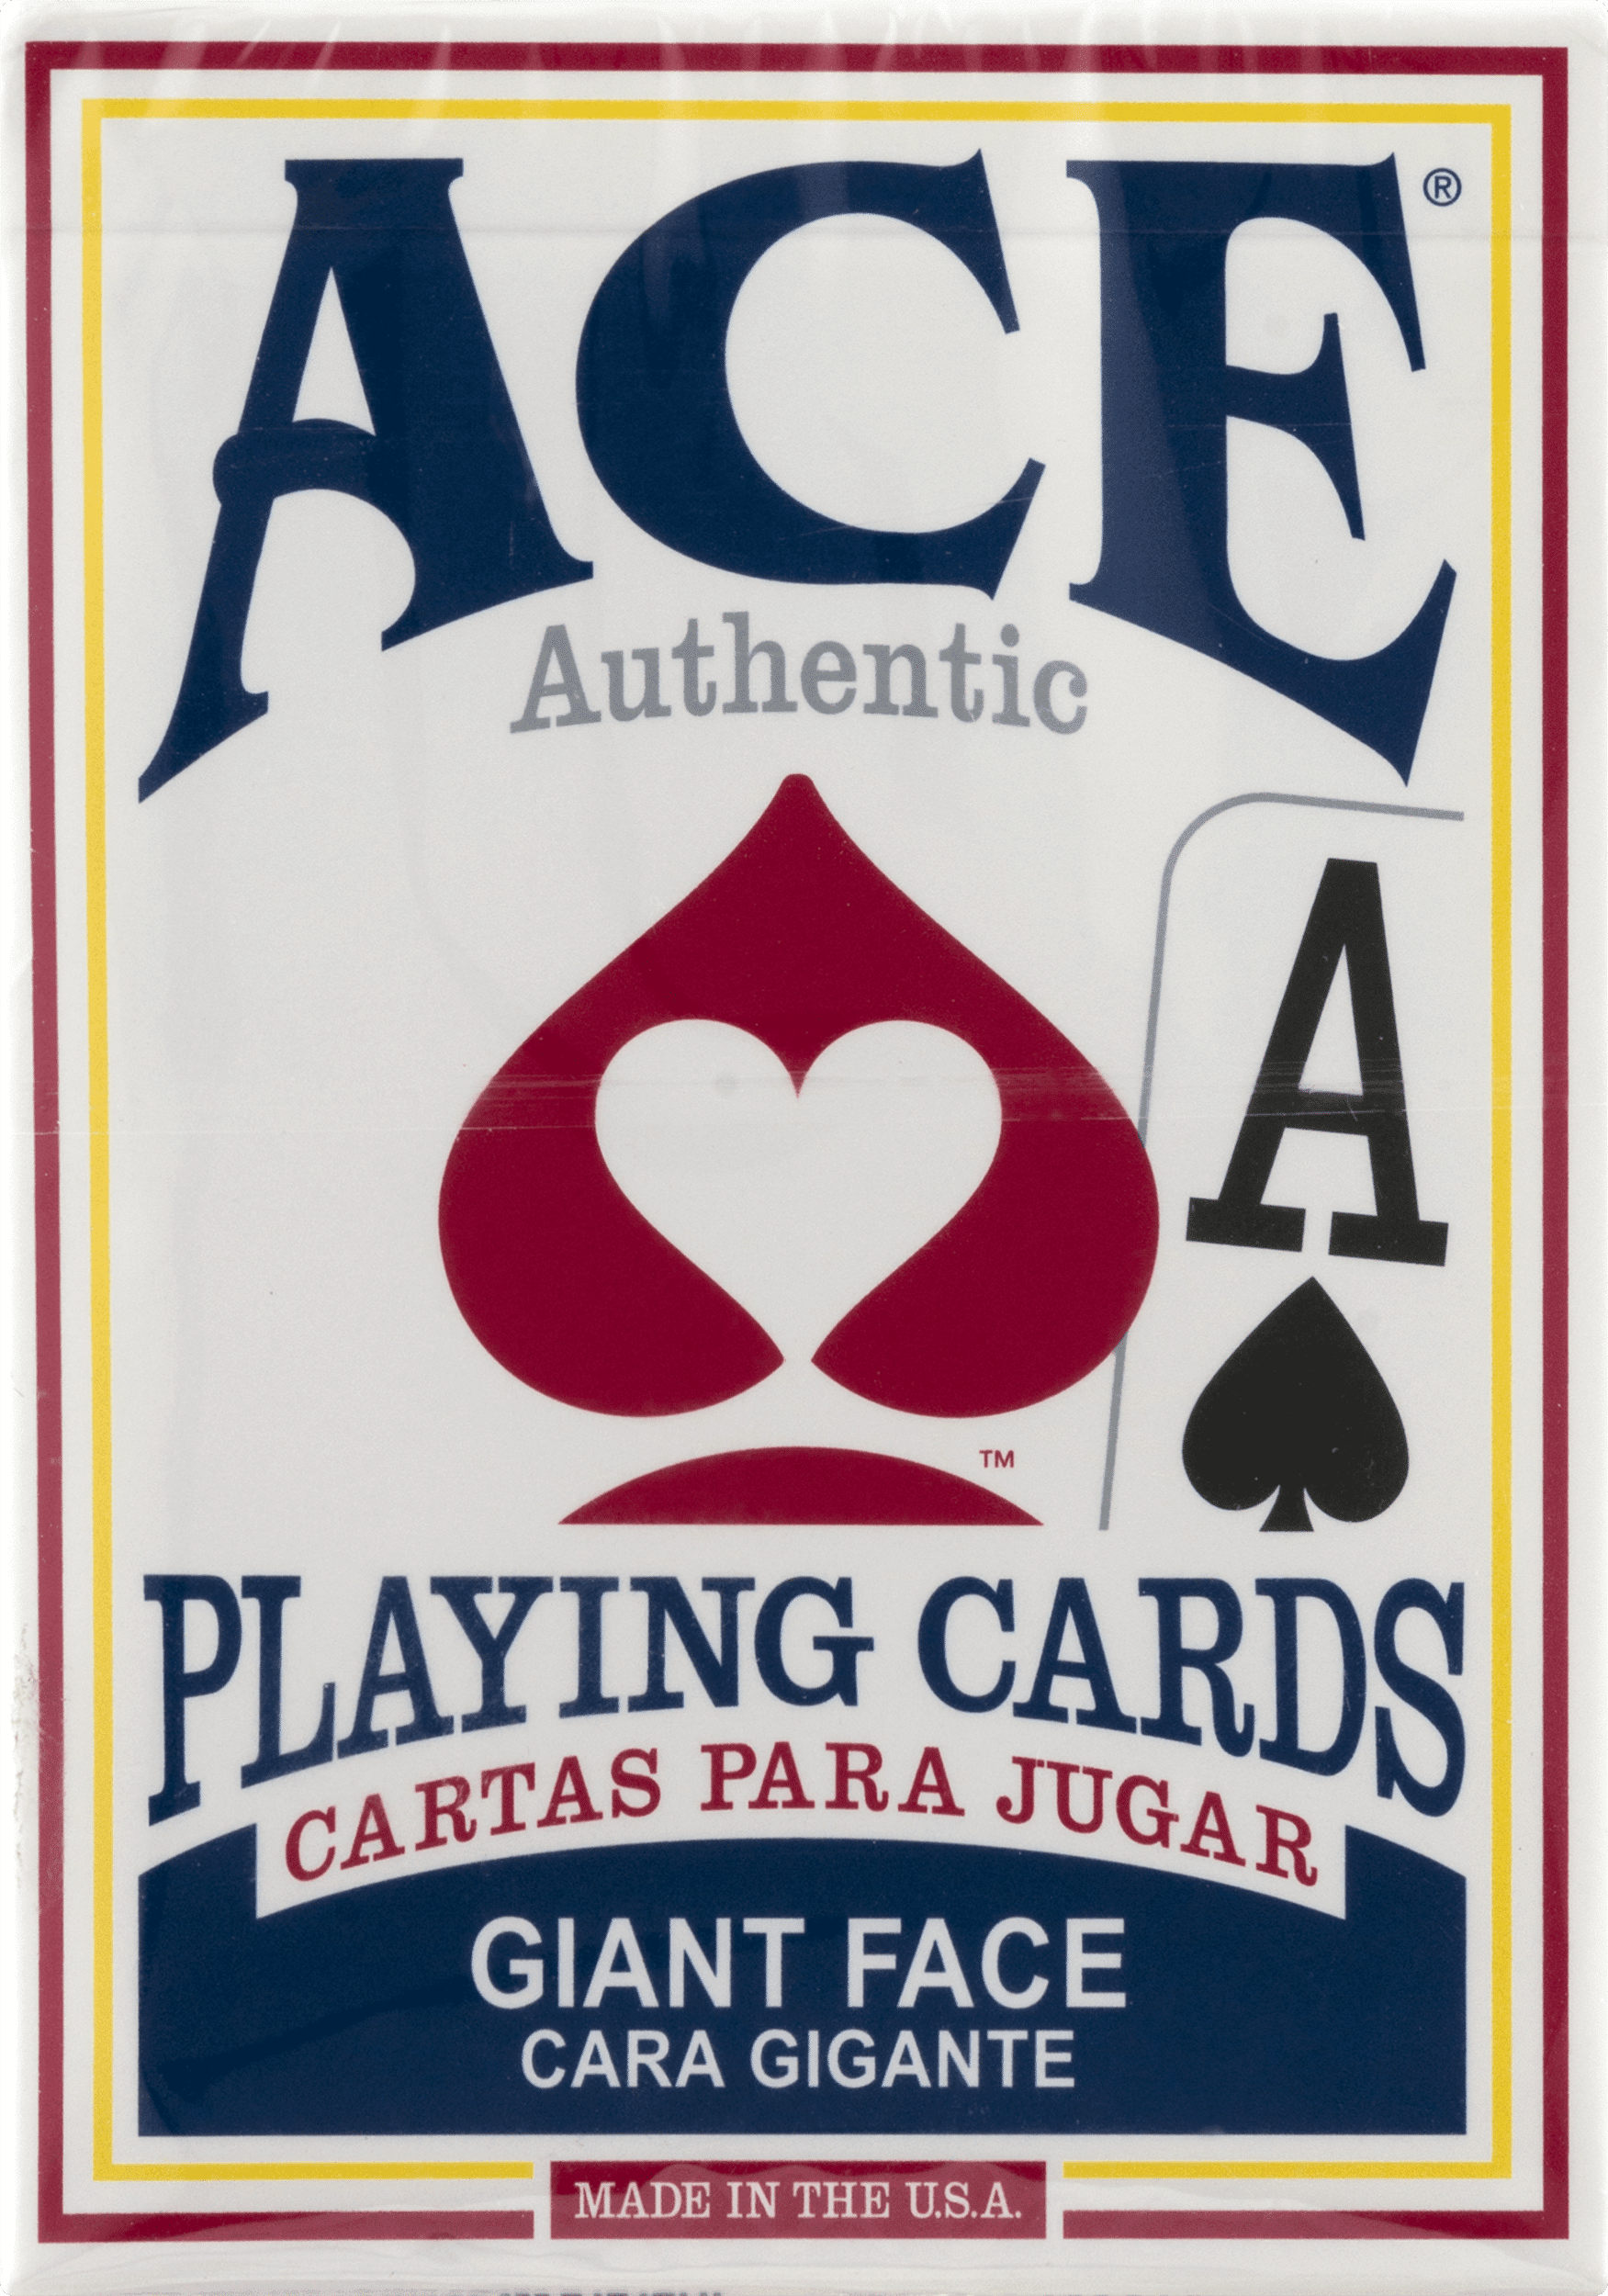 Cartamundi Ace cartas de póquer doble baraja con dados